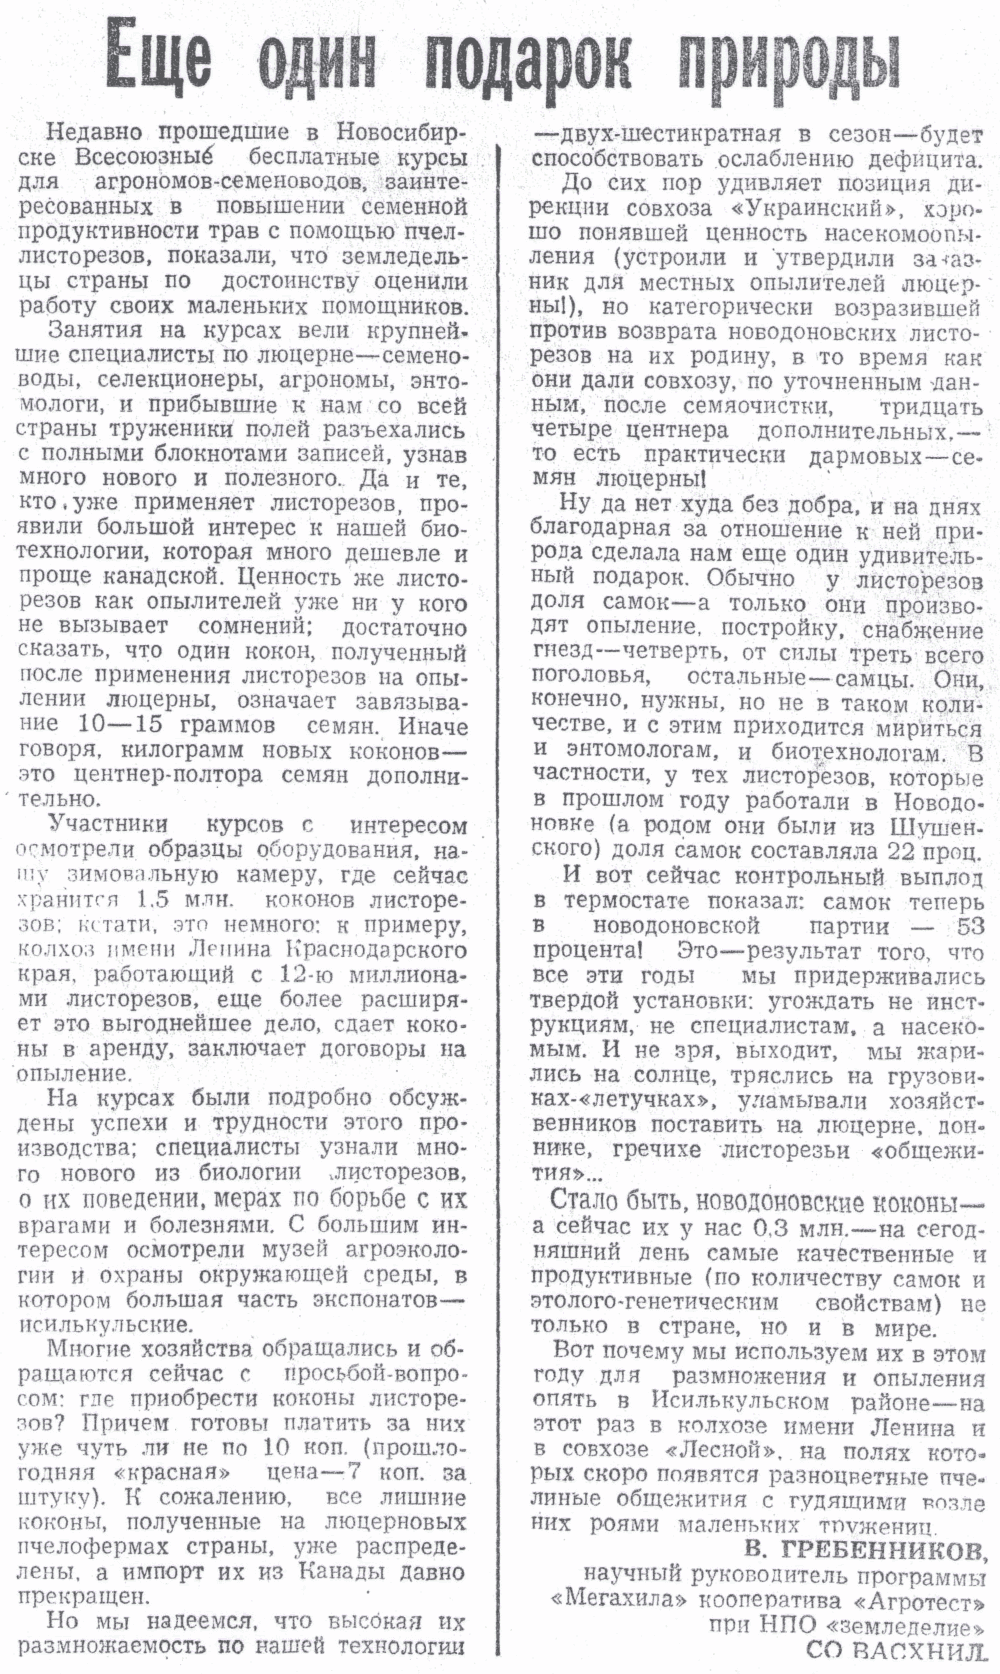 Еще один подарок природы. В.С. Гребенников. Знамя (Исилькульский р-н, Омской обл.), 12.05.1990.